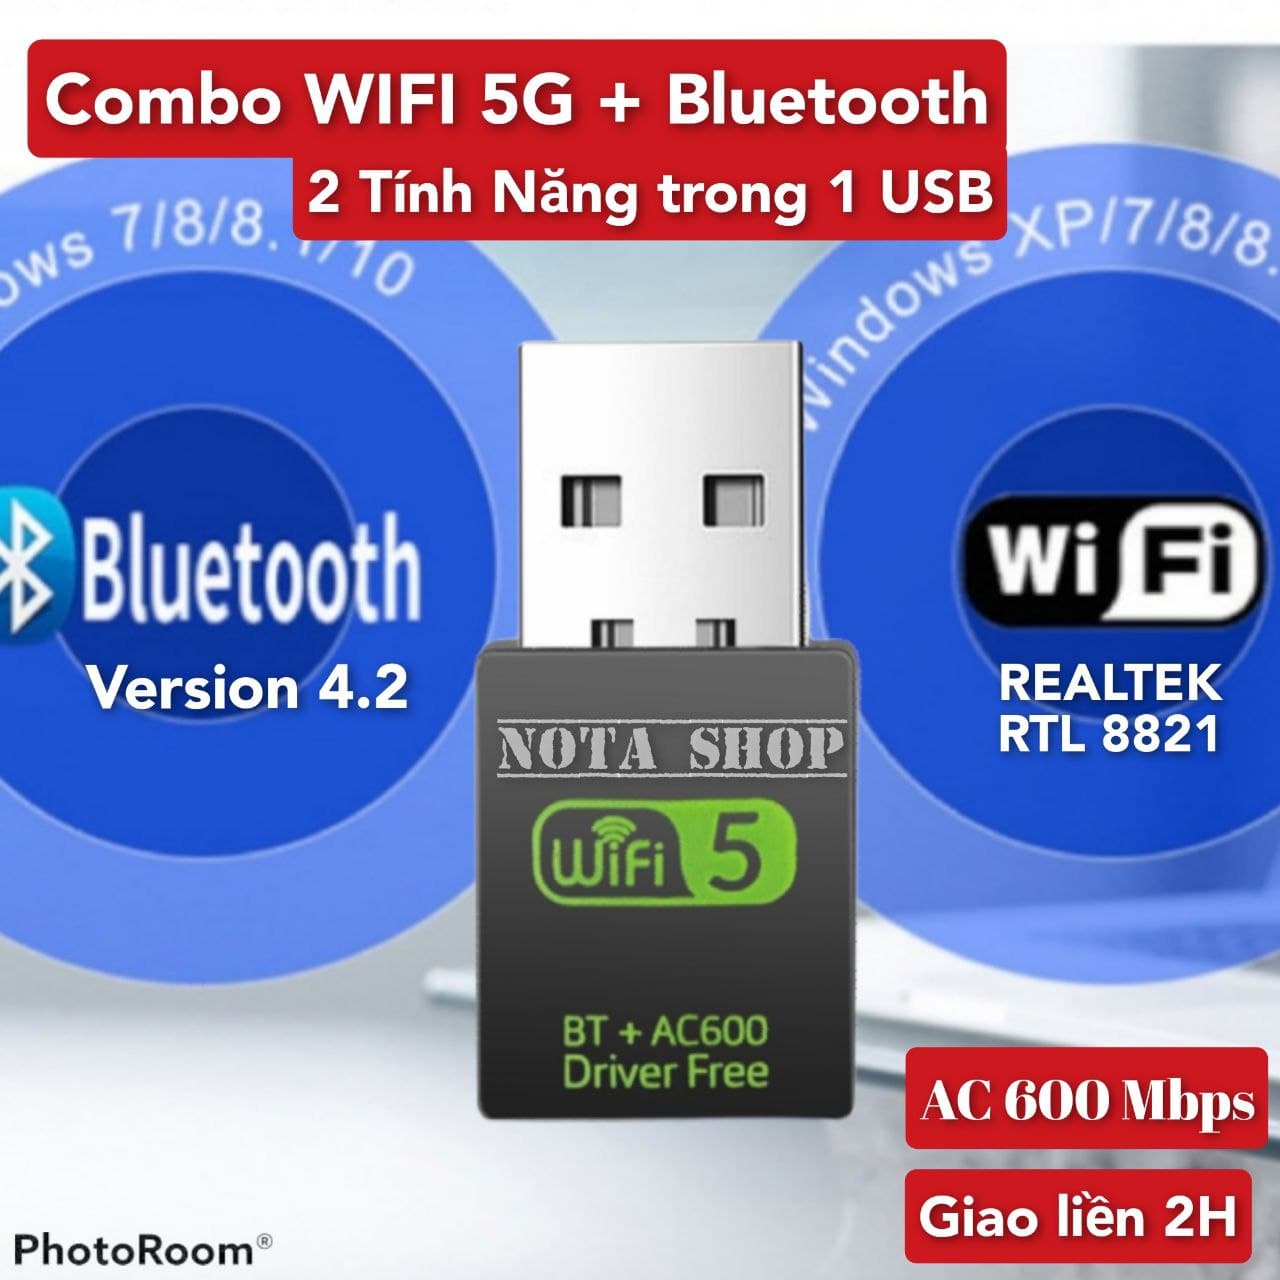 USB WiFi + BLUETOOTH 600Mbps 5G , đầu thu wifi cho pc laptop card mạng wifi bluetooth - Nota 600Mbps +Bluetooth 5.0